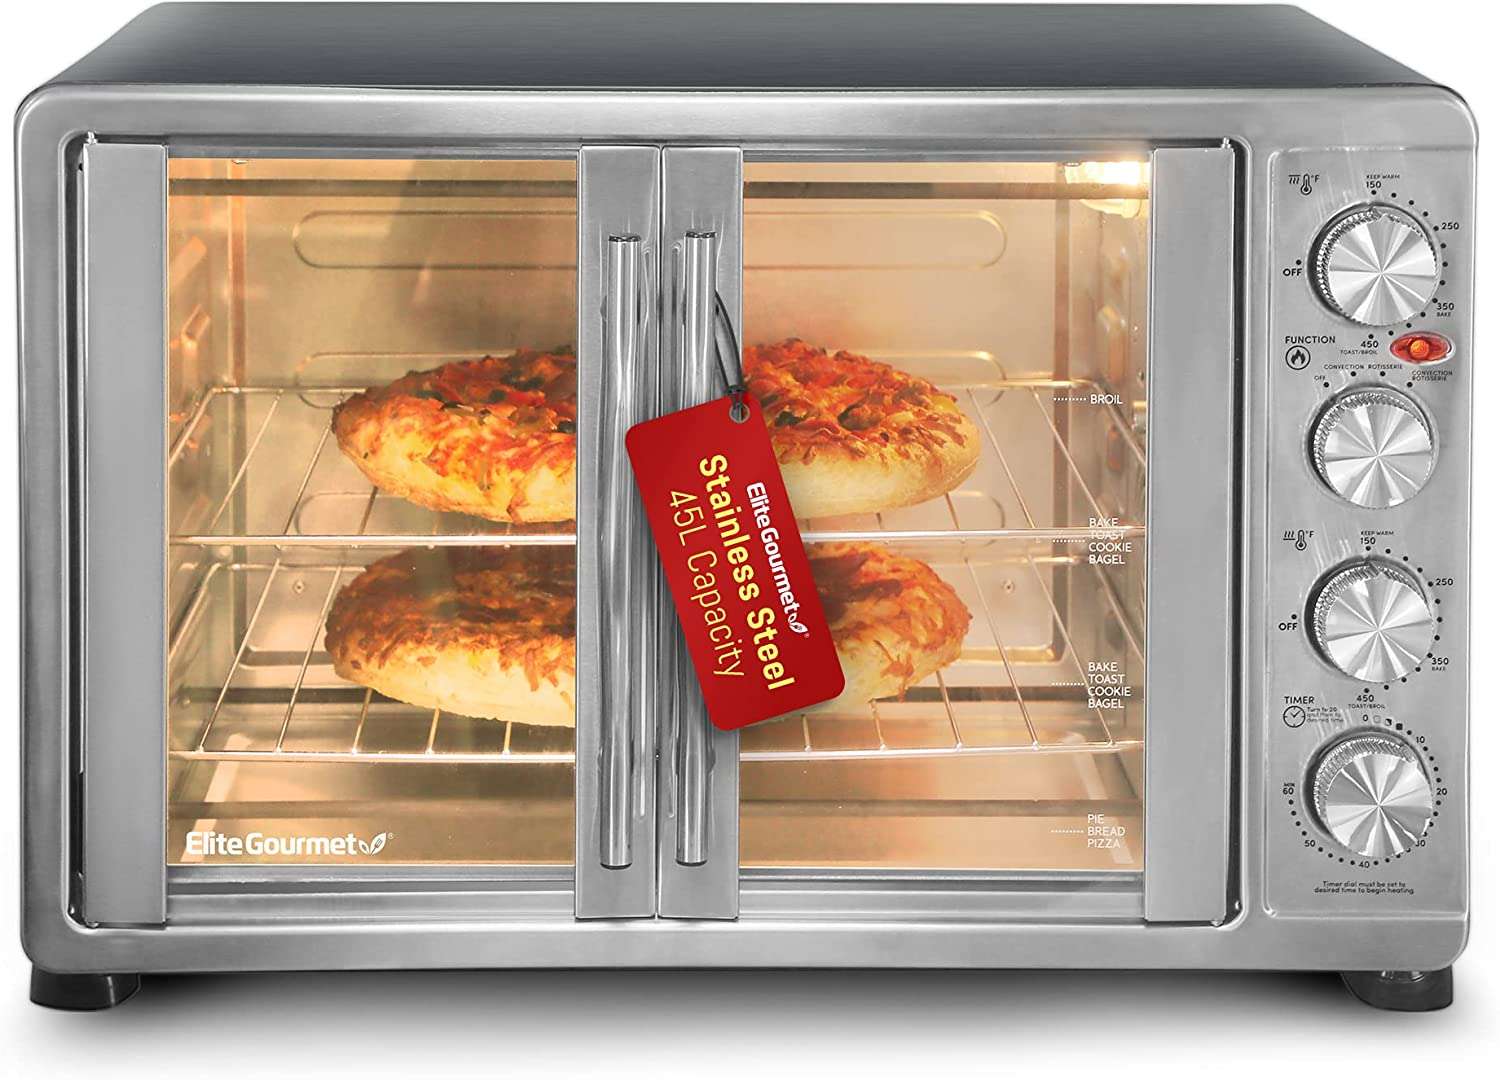 4. Elite Gourmet Countertop Oven